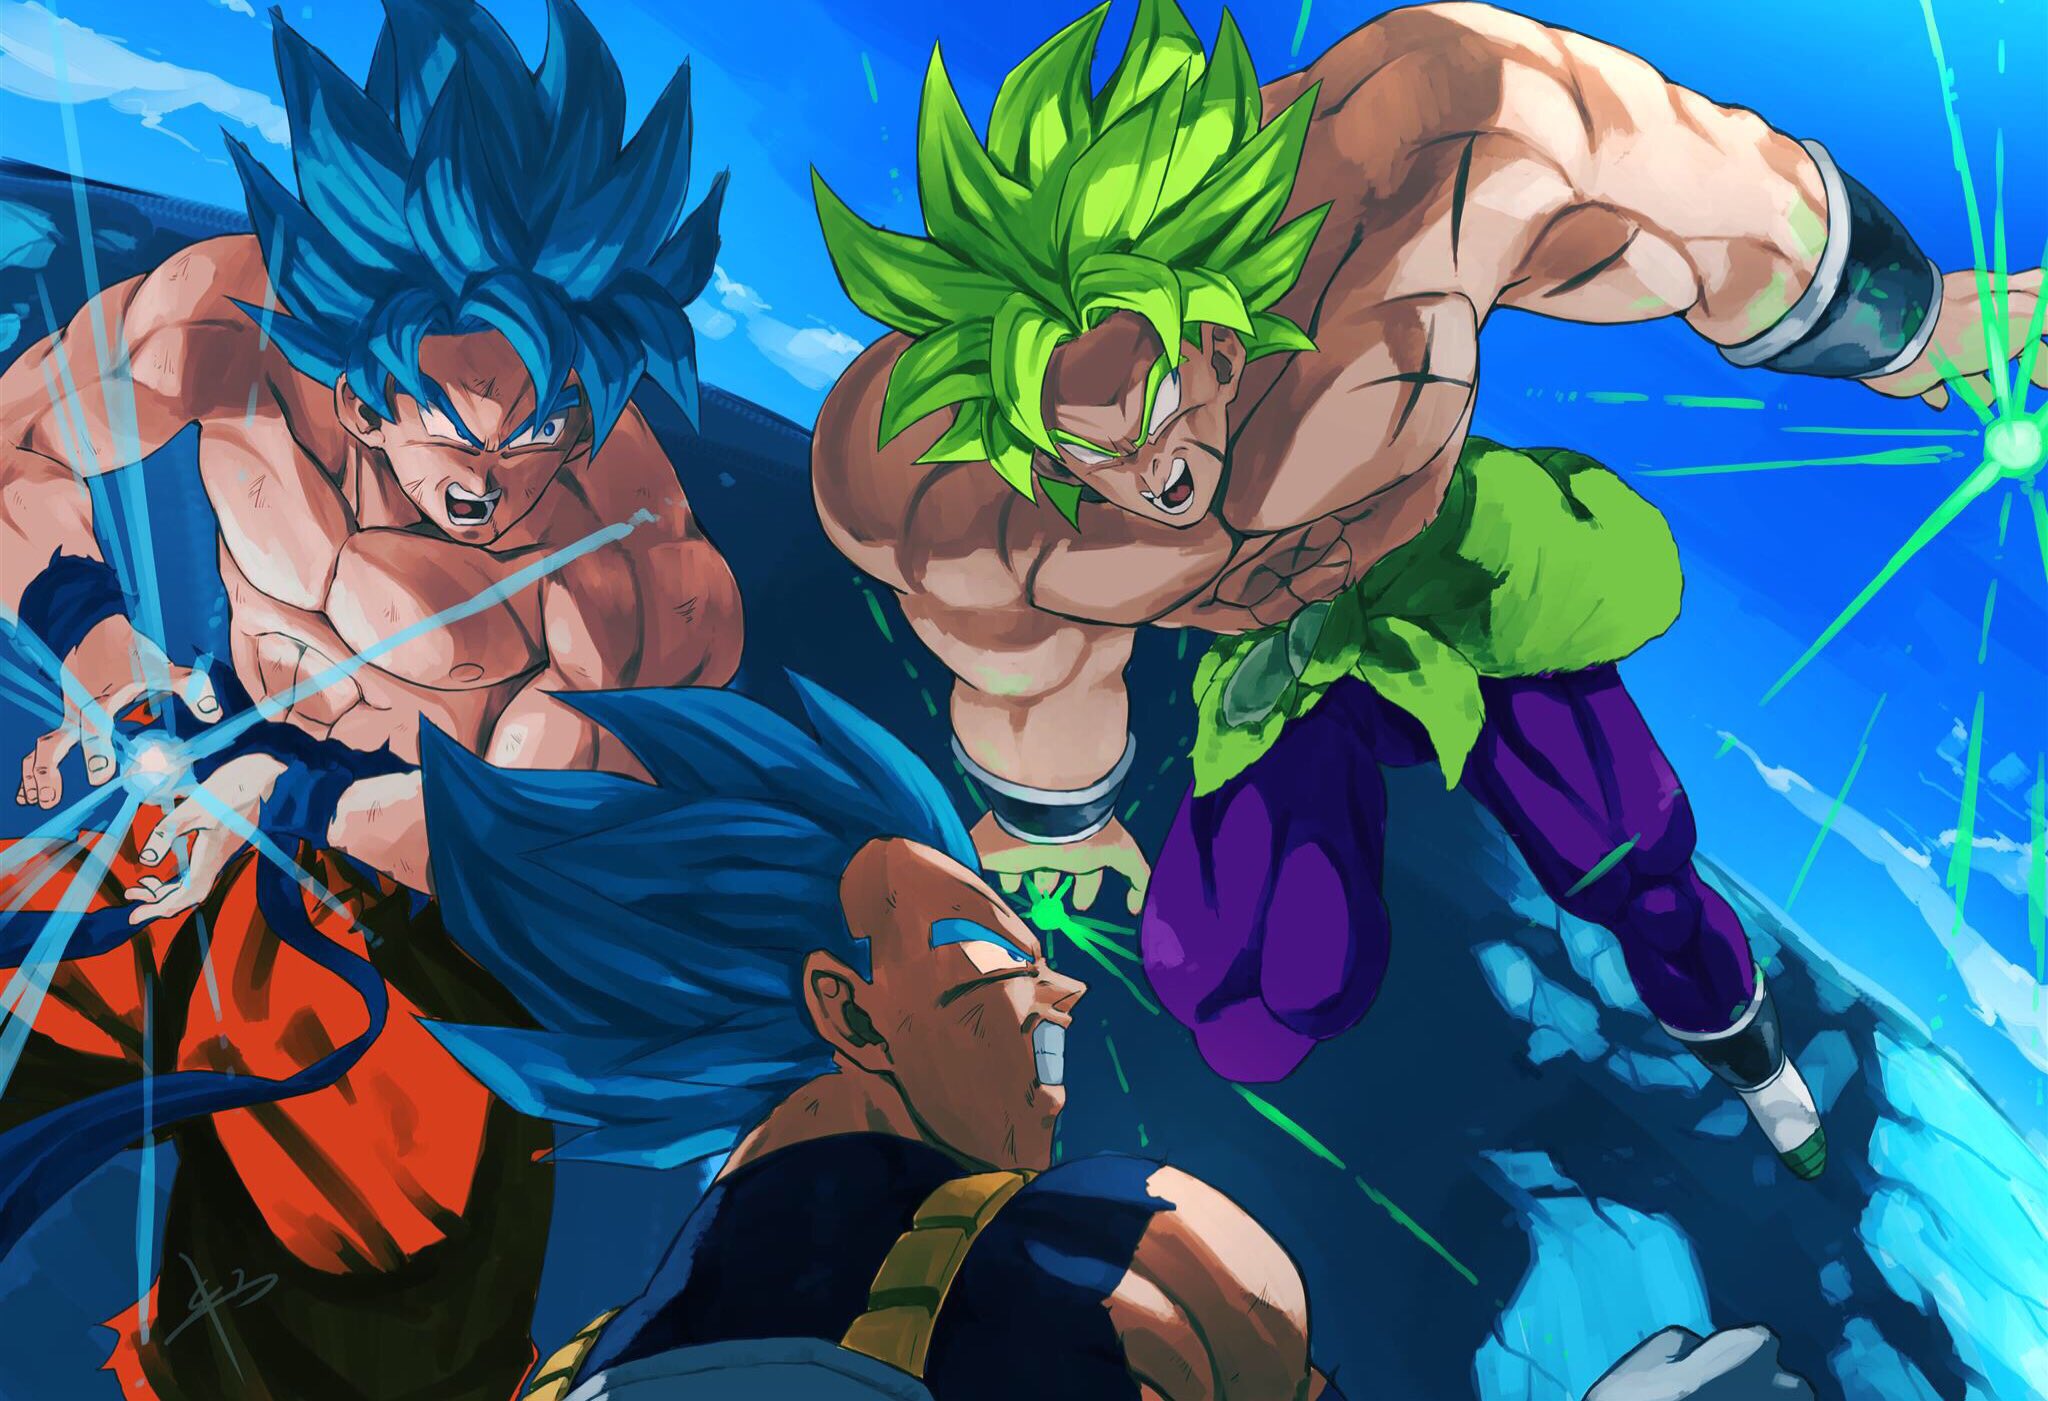 Download mobile wallpaper Anime, Goku, Vegeta (Dragon Ball), Broly (Dragon Ball), Super Saiyan Blue, Dragon Ball Super: Broly, Super Saiyan Green for free.